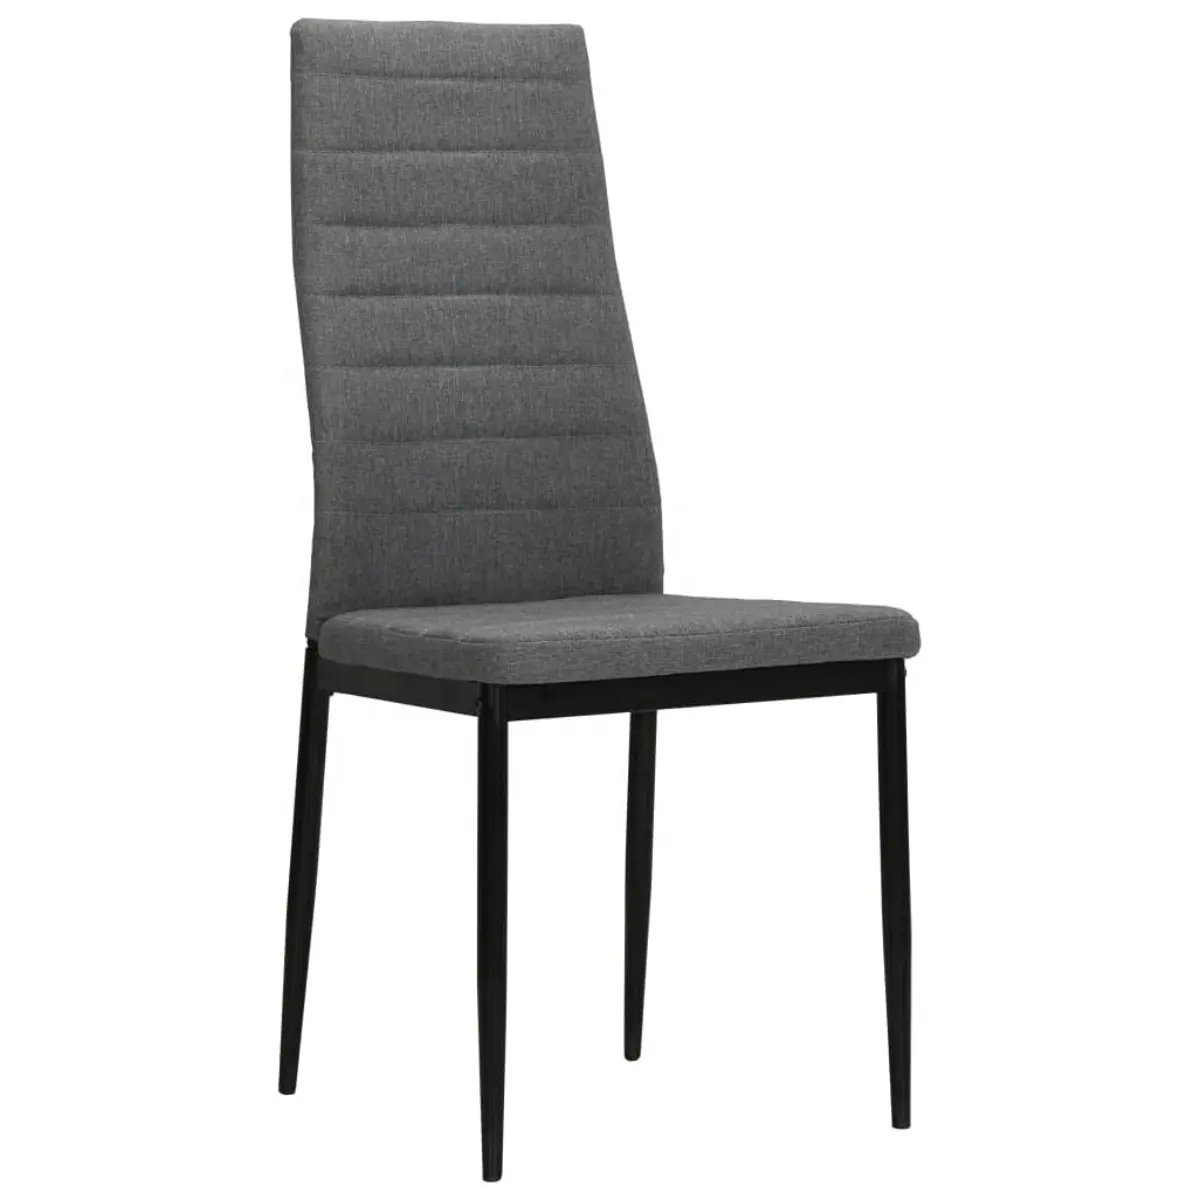 Tecido estofados cadeiras de volta alta Estilo Urbano Cozinha Side Cadeira acolchoada com pernas metálicas para Cozinha Sala de Jantar Quarto